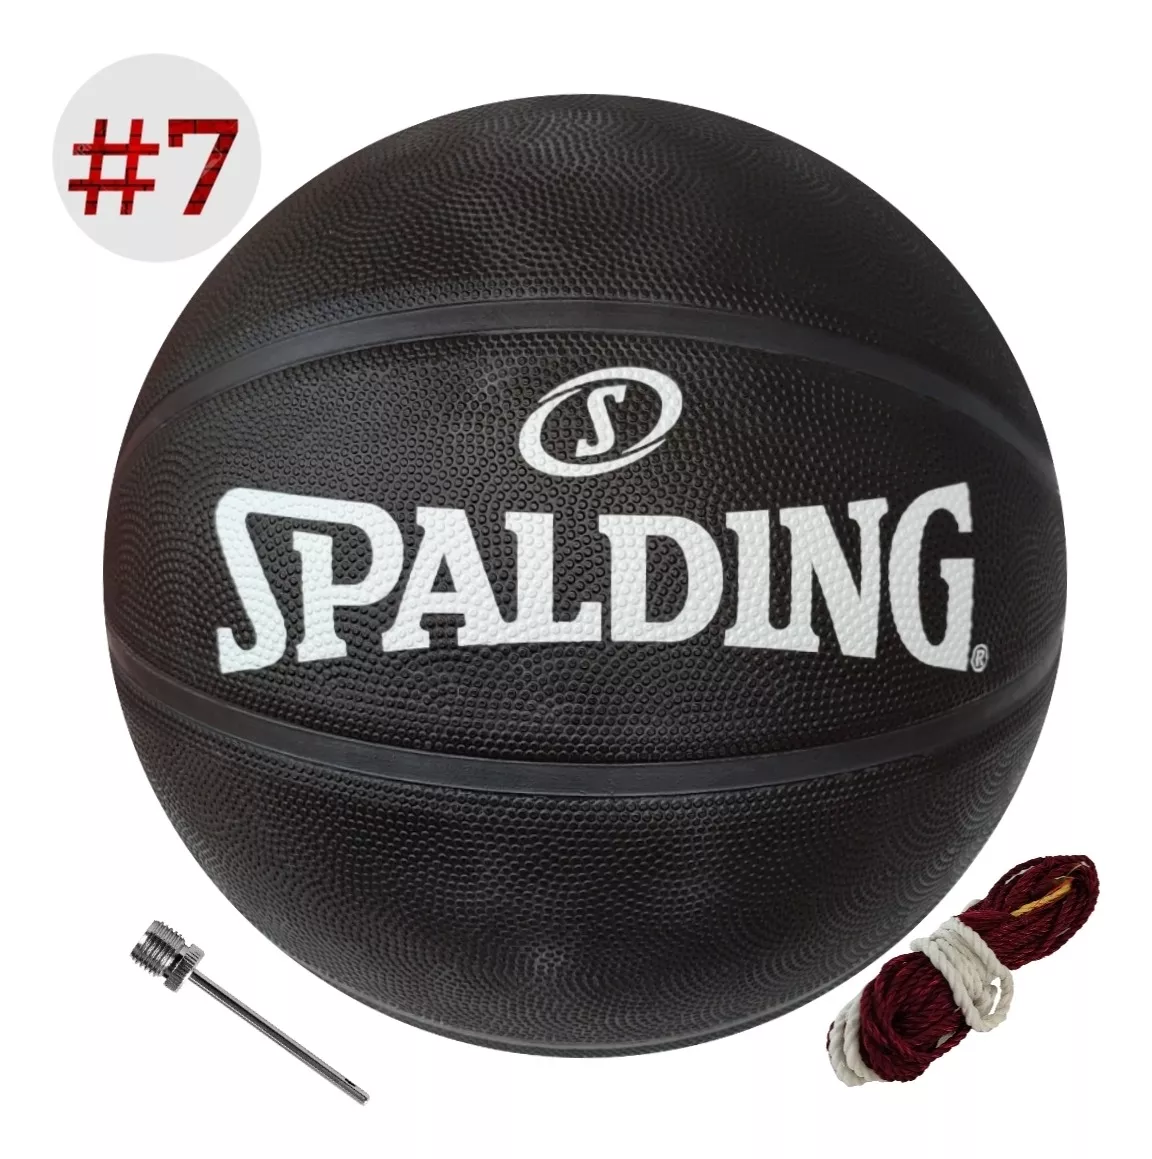 Balón De Básquet Spalding Original Nba #7 Nuevo Modelo